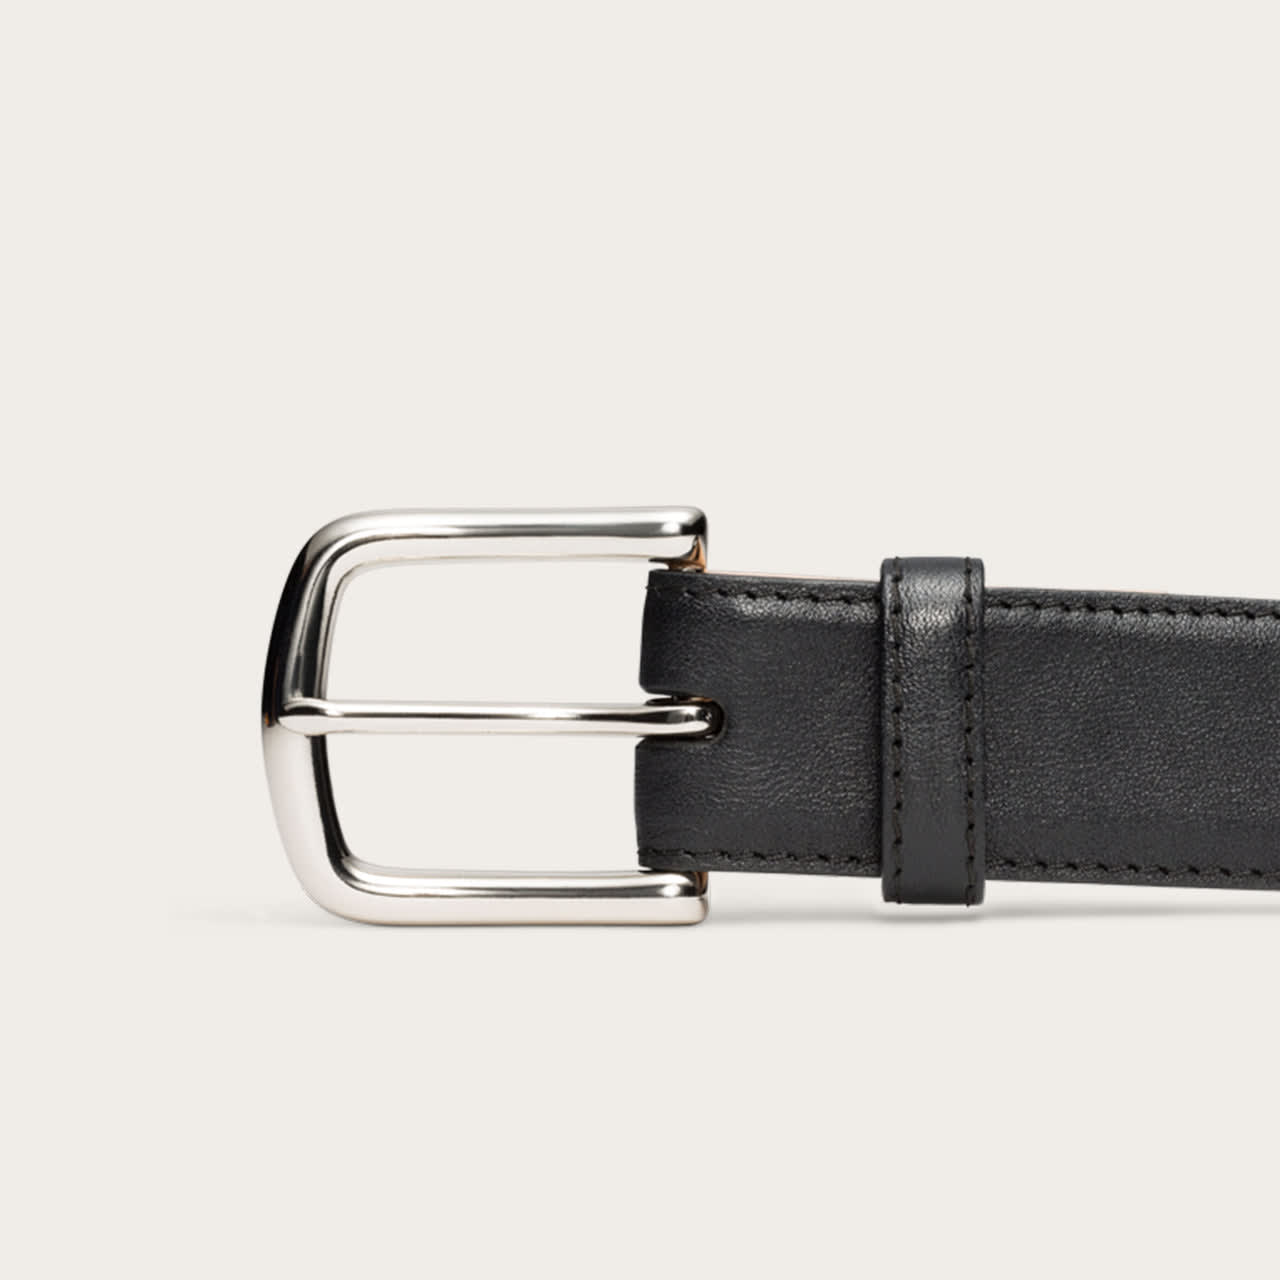 Men's Calf Skin Belt - Handmade Calfskin Leather Belts | Tecovas